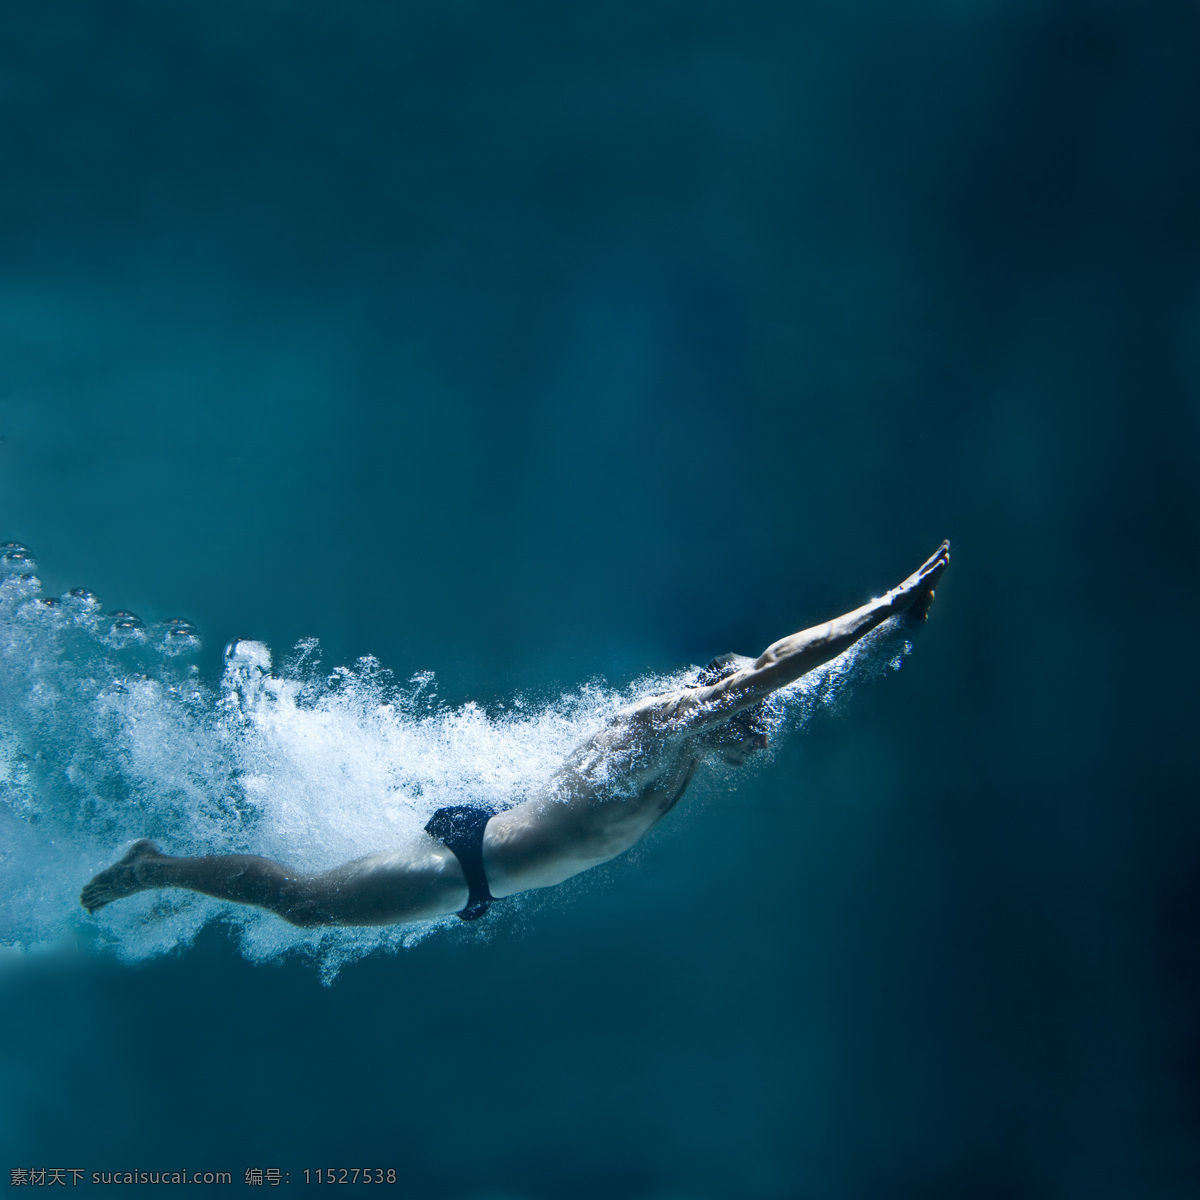 潜水 游泳 男子 运动员 潜水运动员 游泳运动员 体育运动员 体育运动 体育运动项目 生活百科